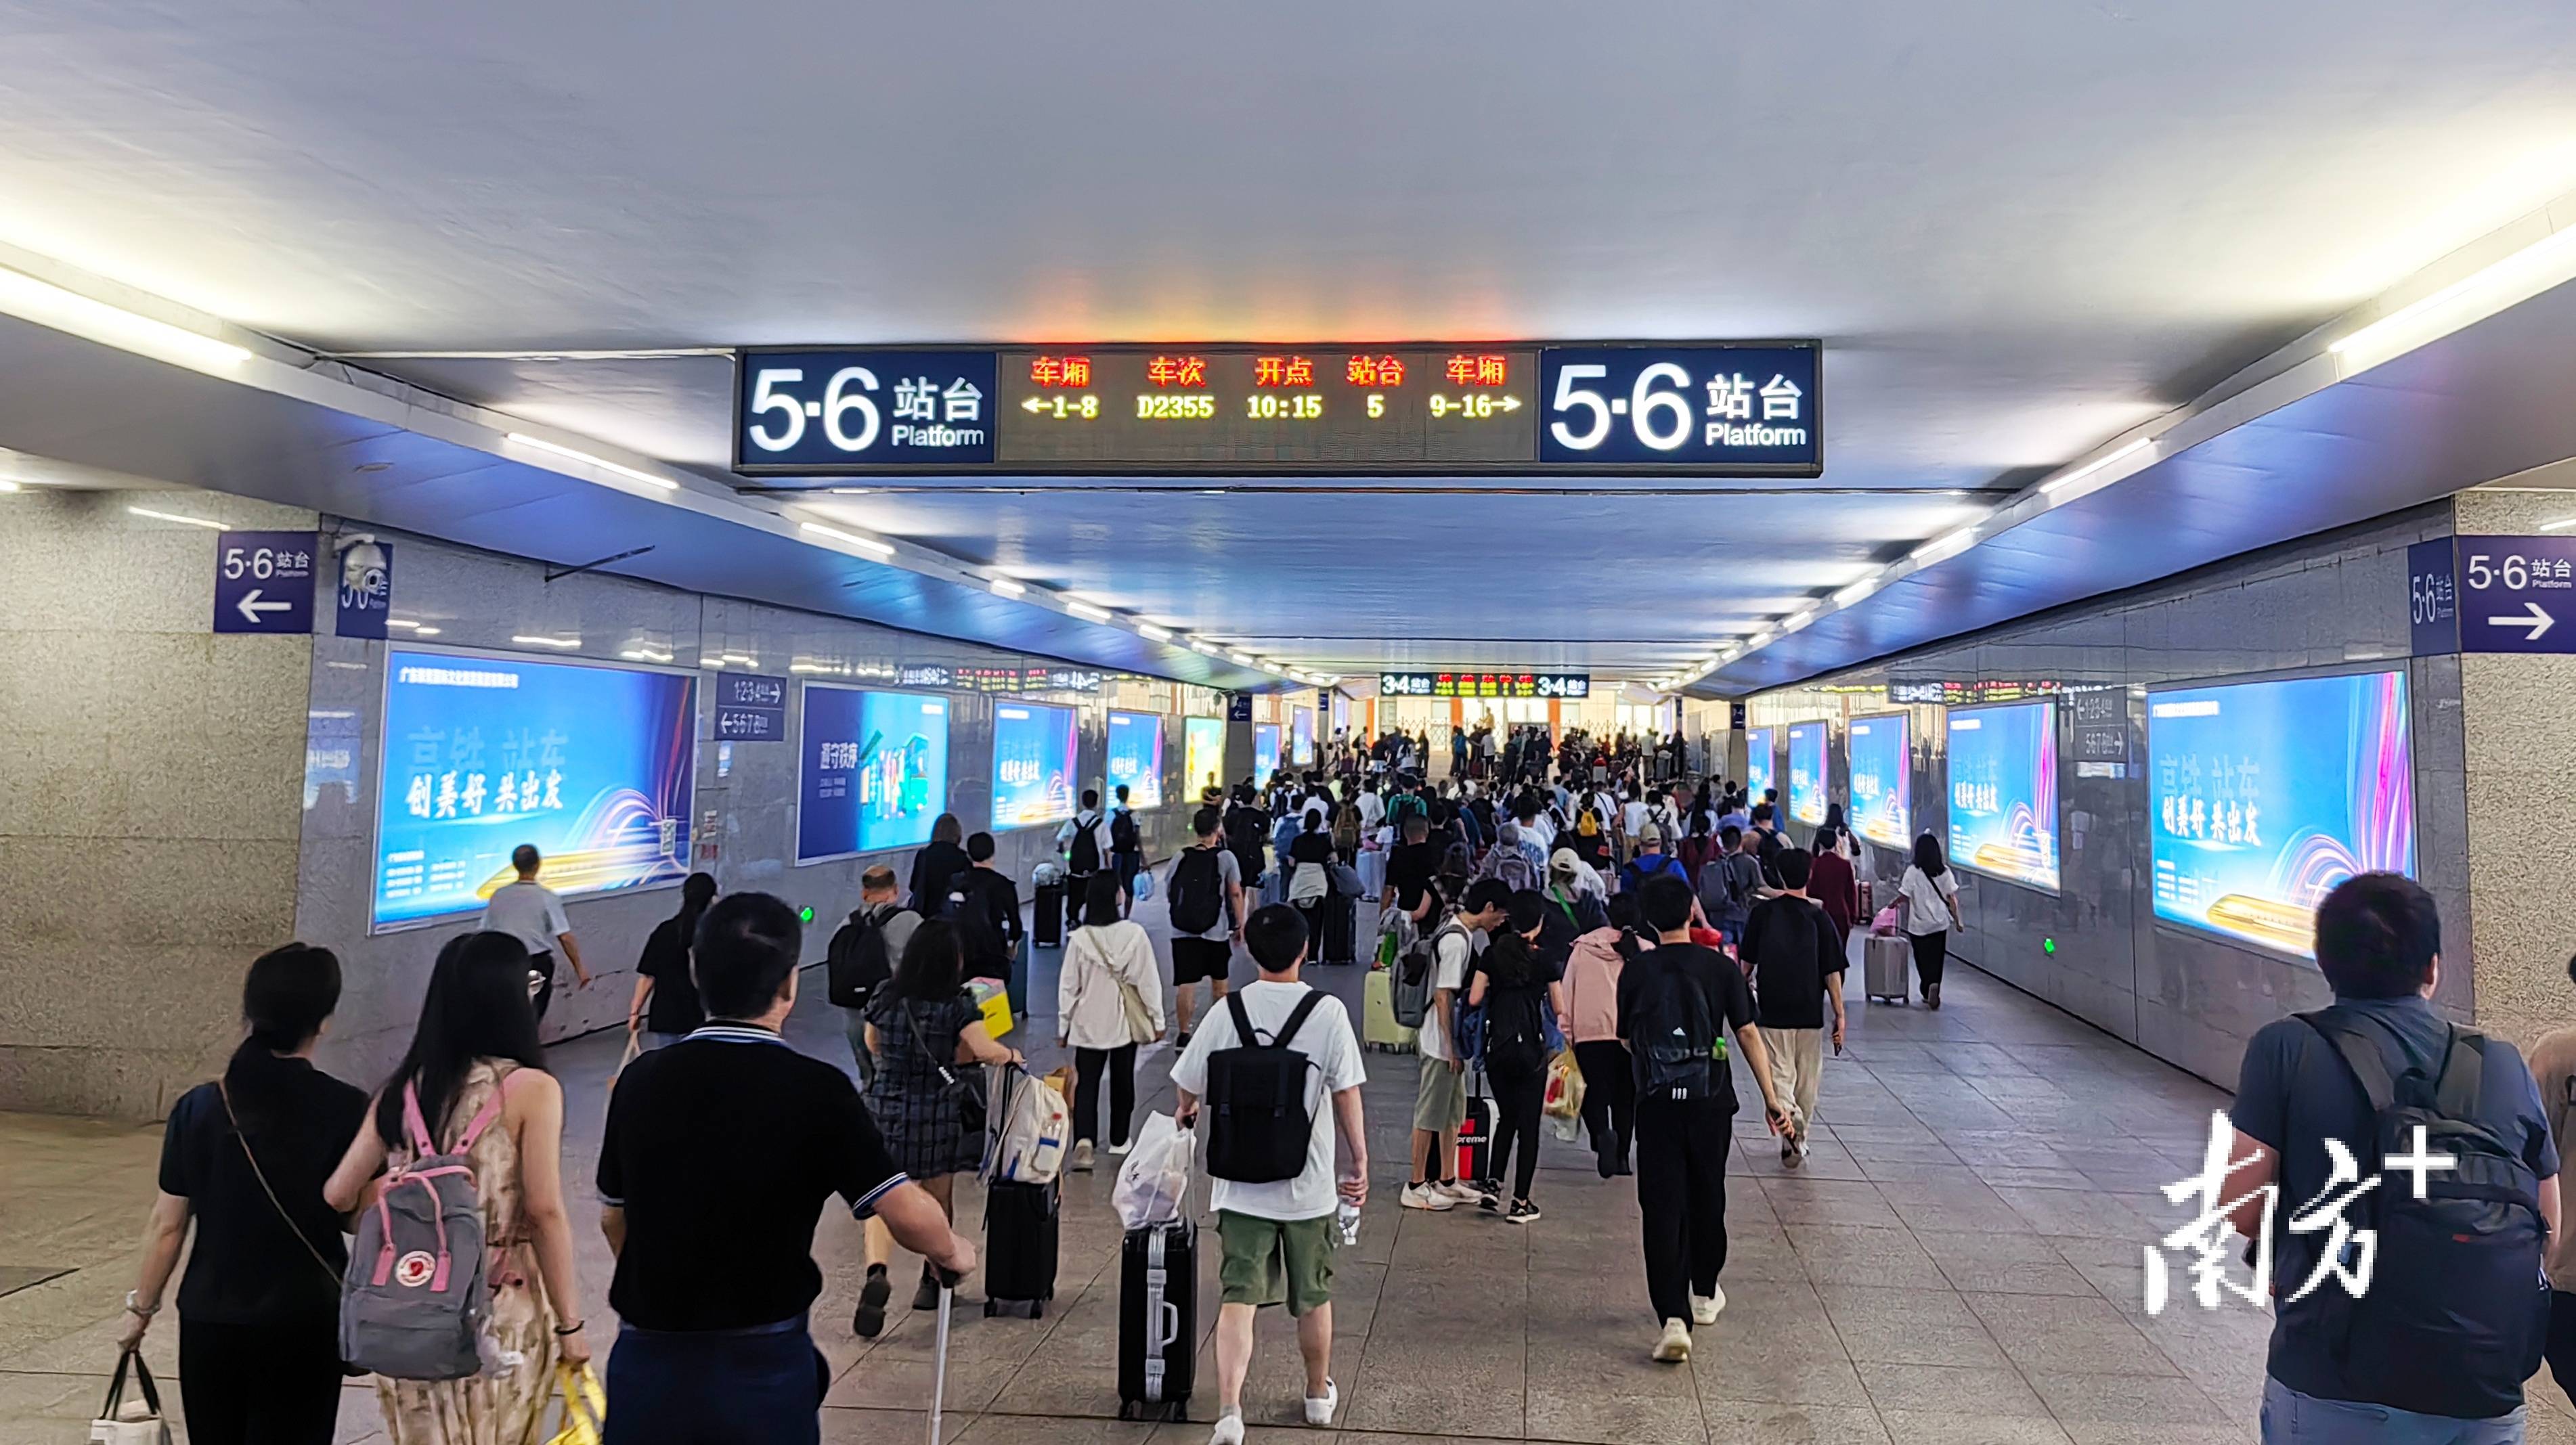 潮汕站五一增开73列夜车,预计到发旅客超54万人次